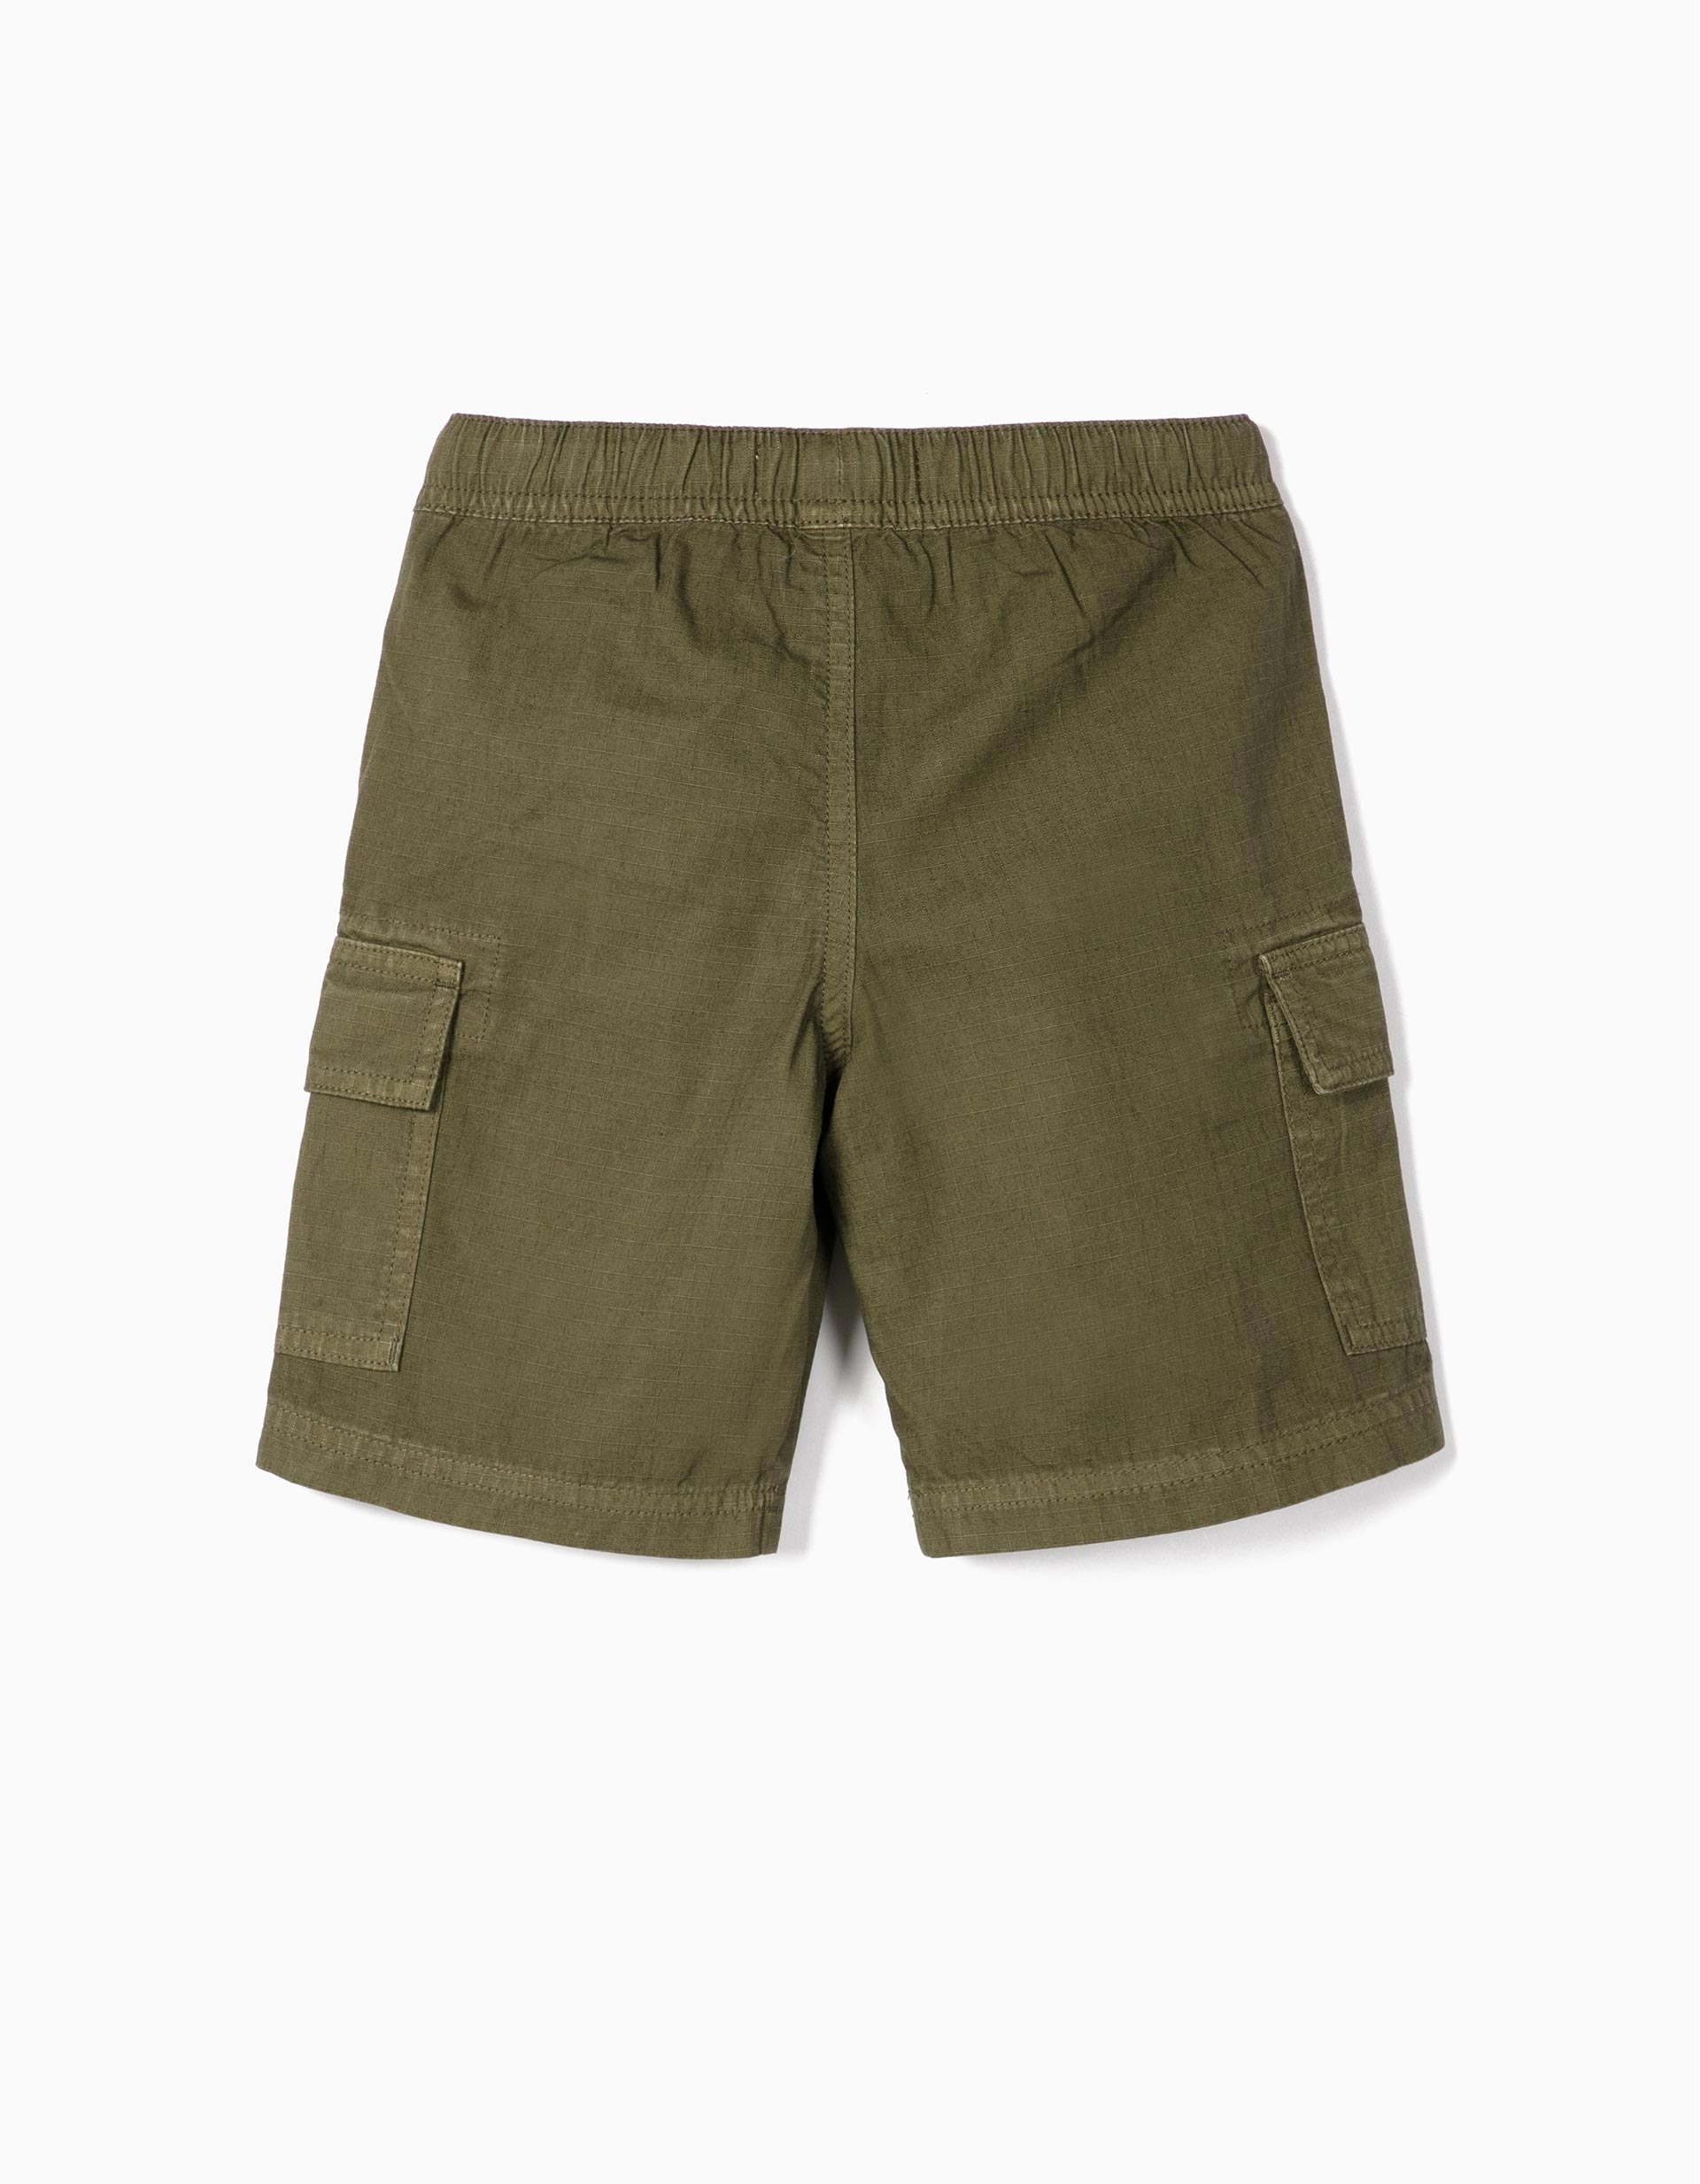 Cargo Shorts for Boys, 'Ripstop', Green | MO Online